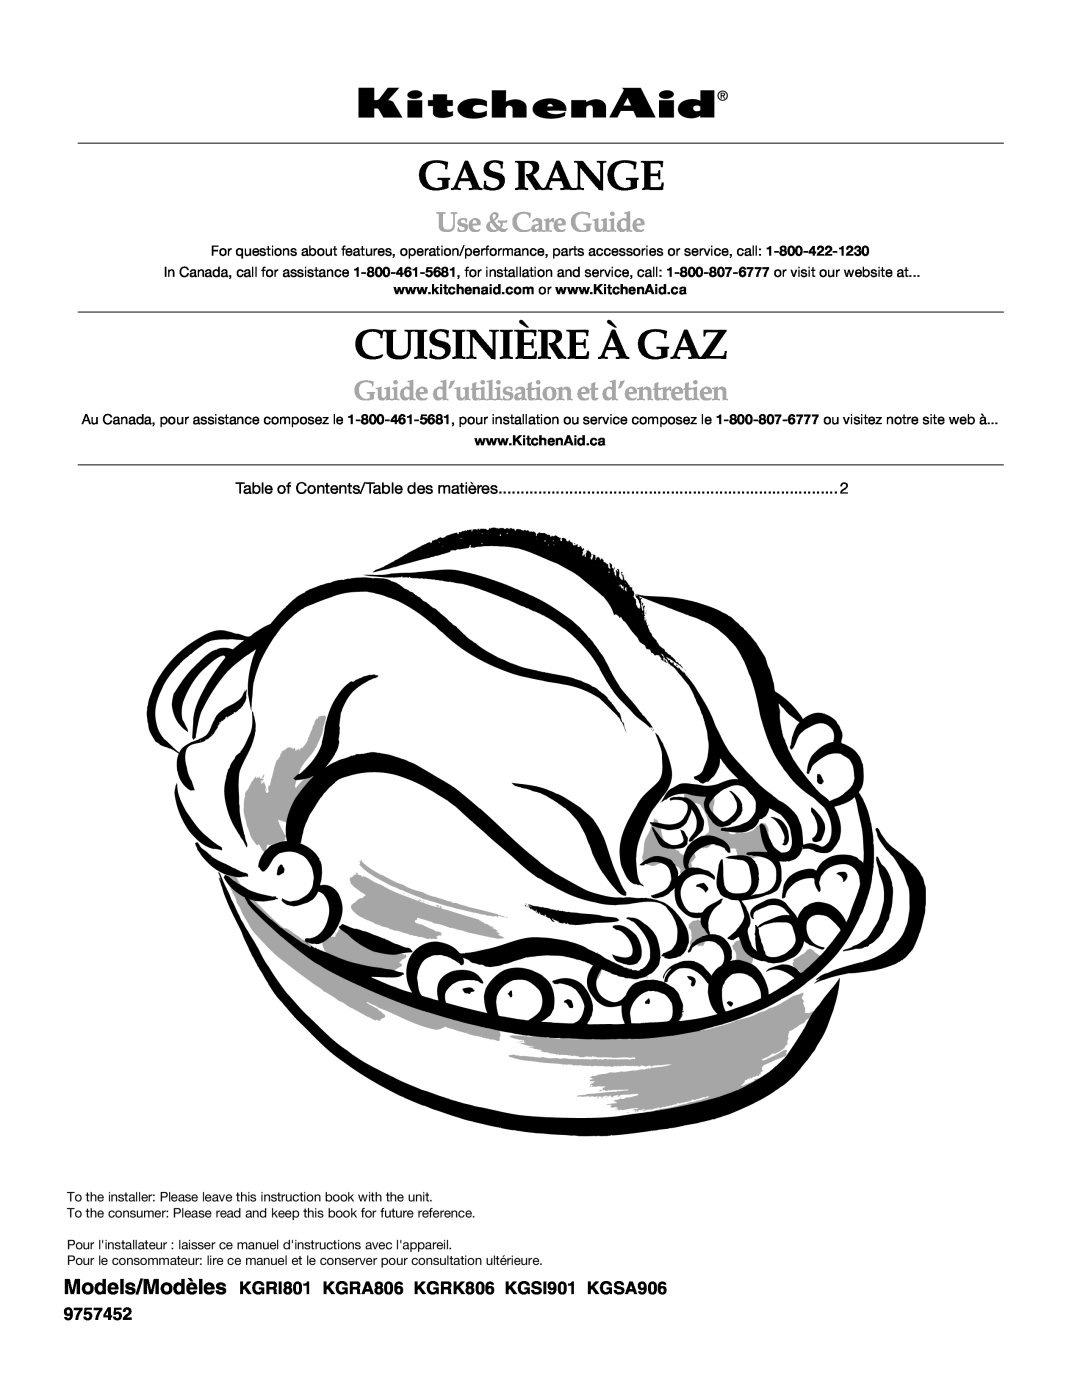 KitchenAid KGRI801 manual Gas Range, Cuisinière À Gaz, Use &CareGuide, Guided’utilisation etd’entretien 